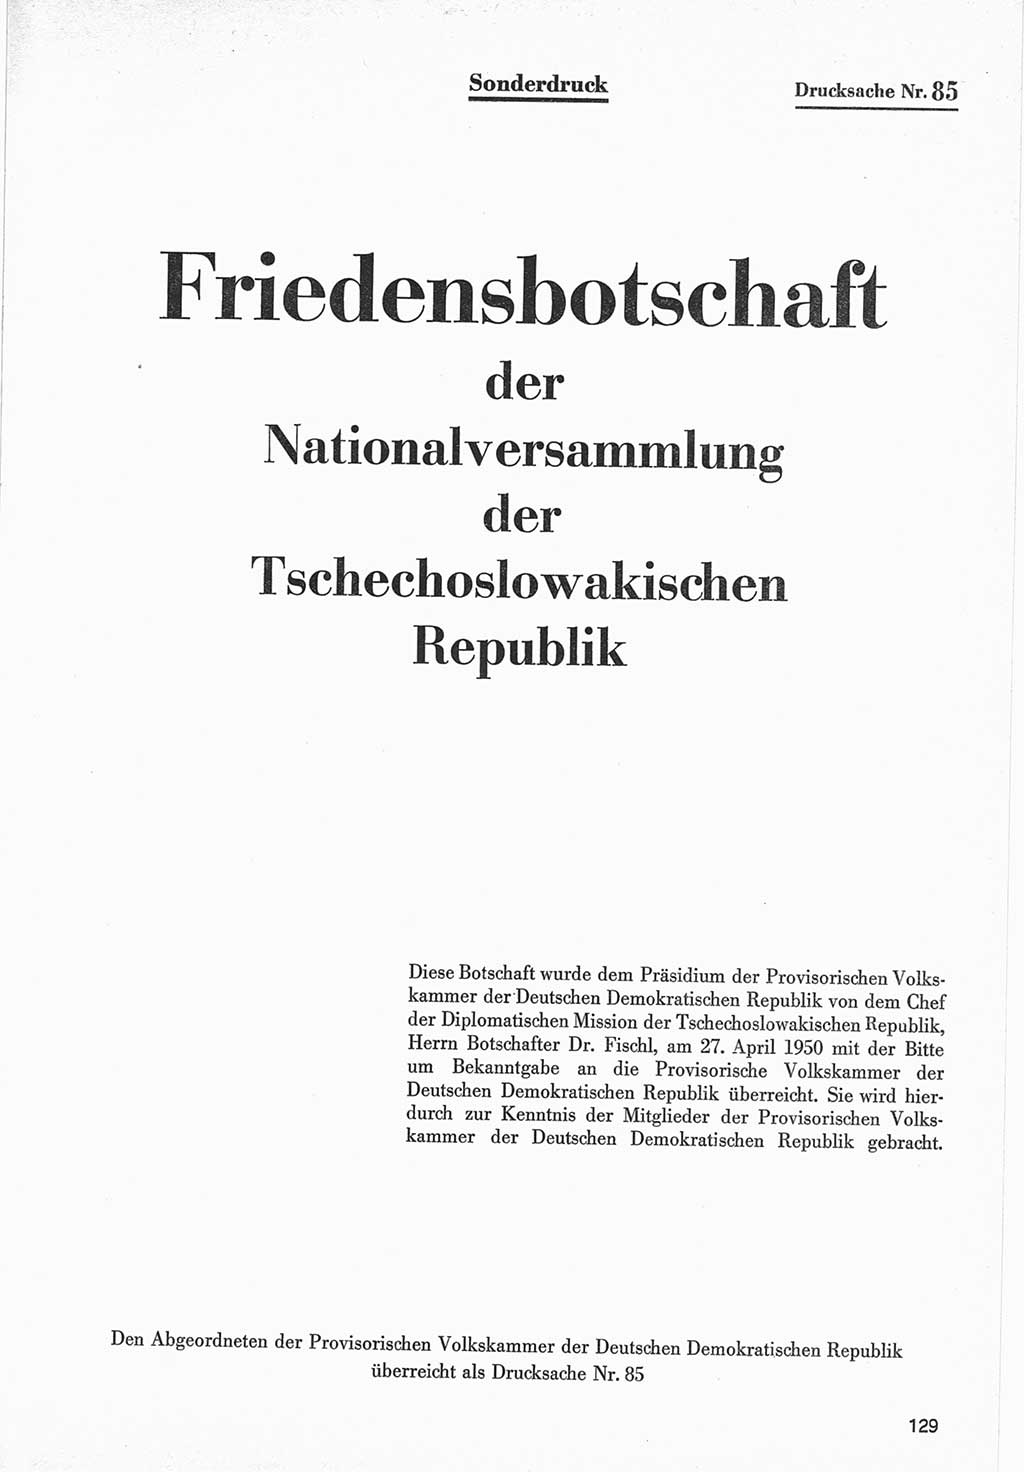 Provisorische Volkskammer (VK) der Deutschen Demokratischen Republik (DDR) 1949-1950, Dokument 731 (Prov. VK DDR 1949-1950, Dok. 731)